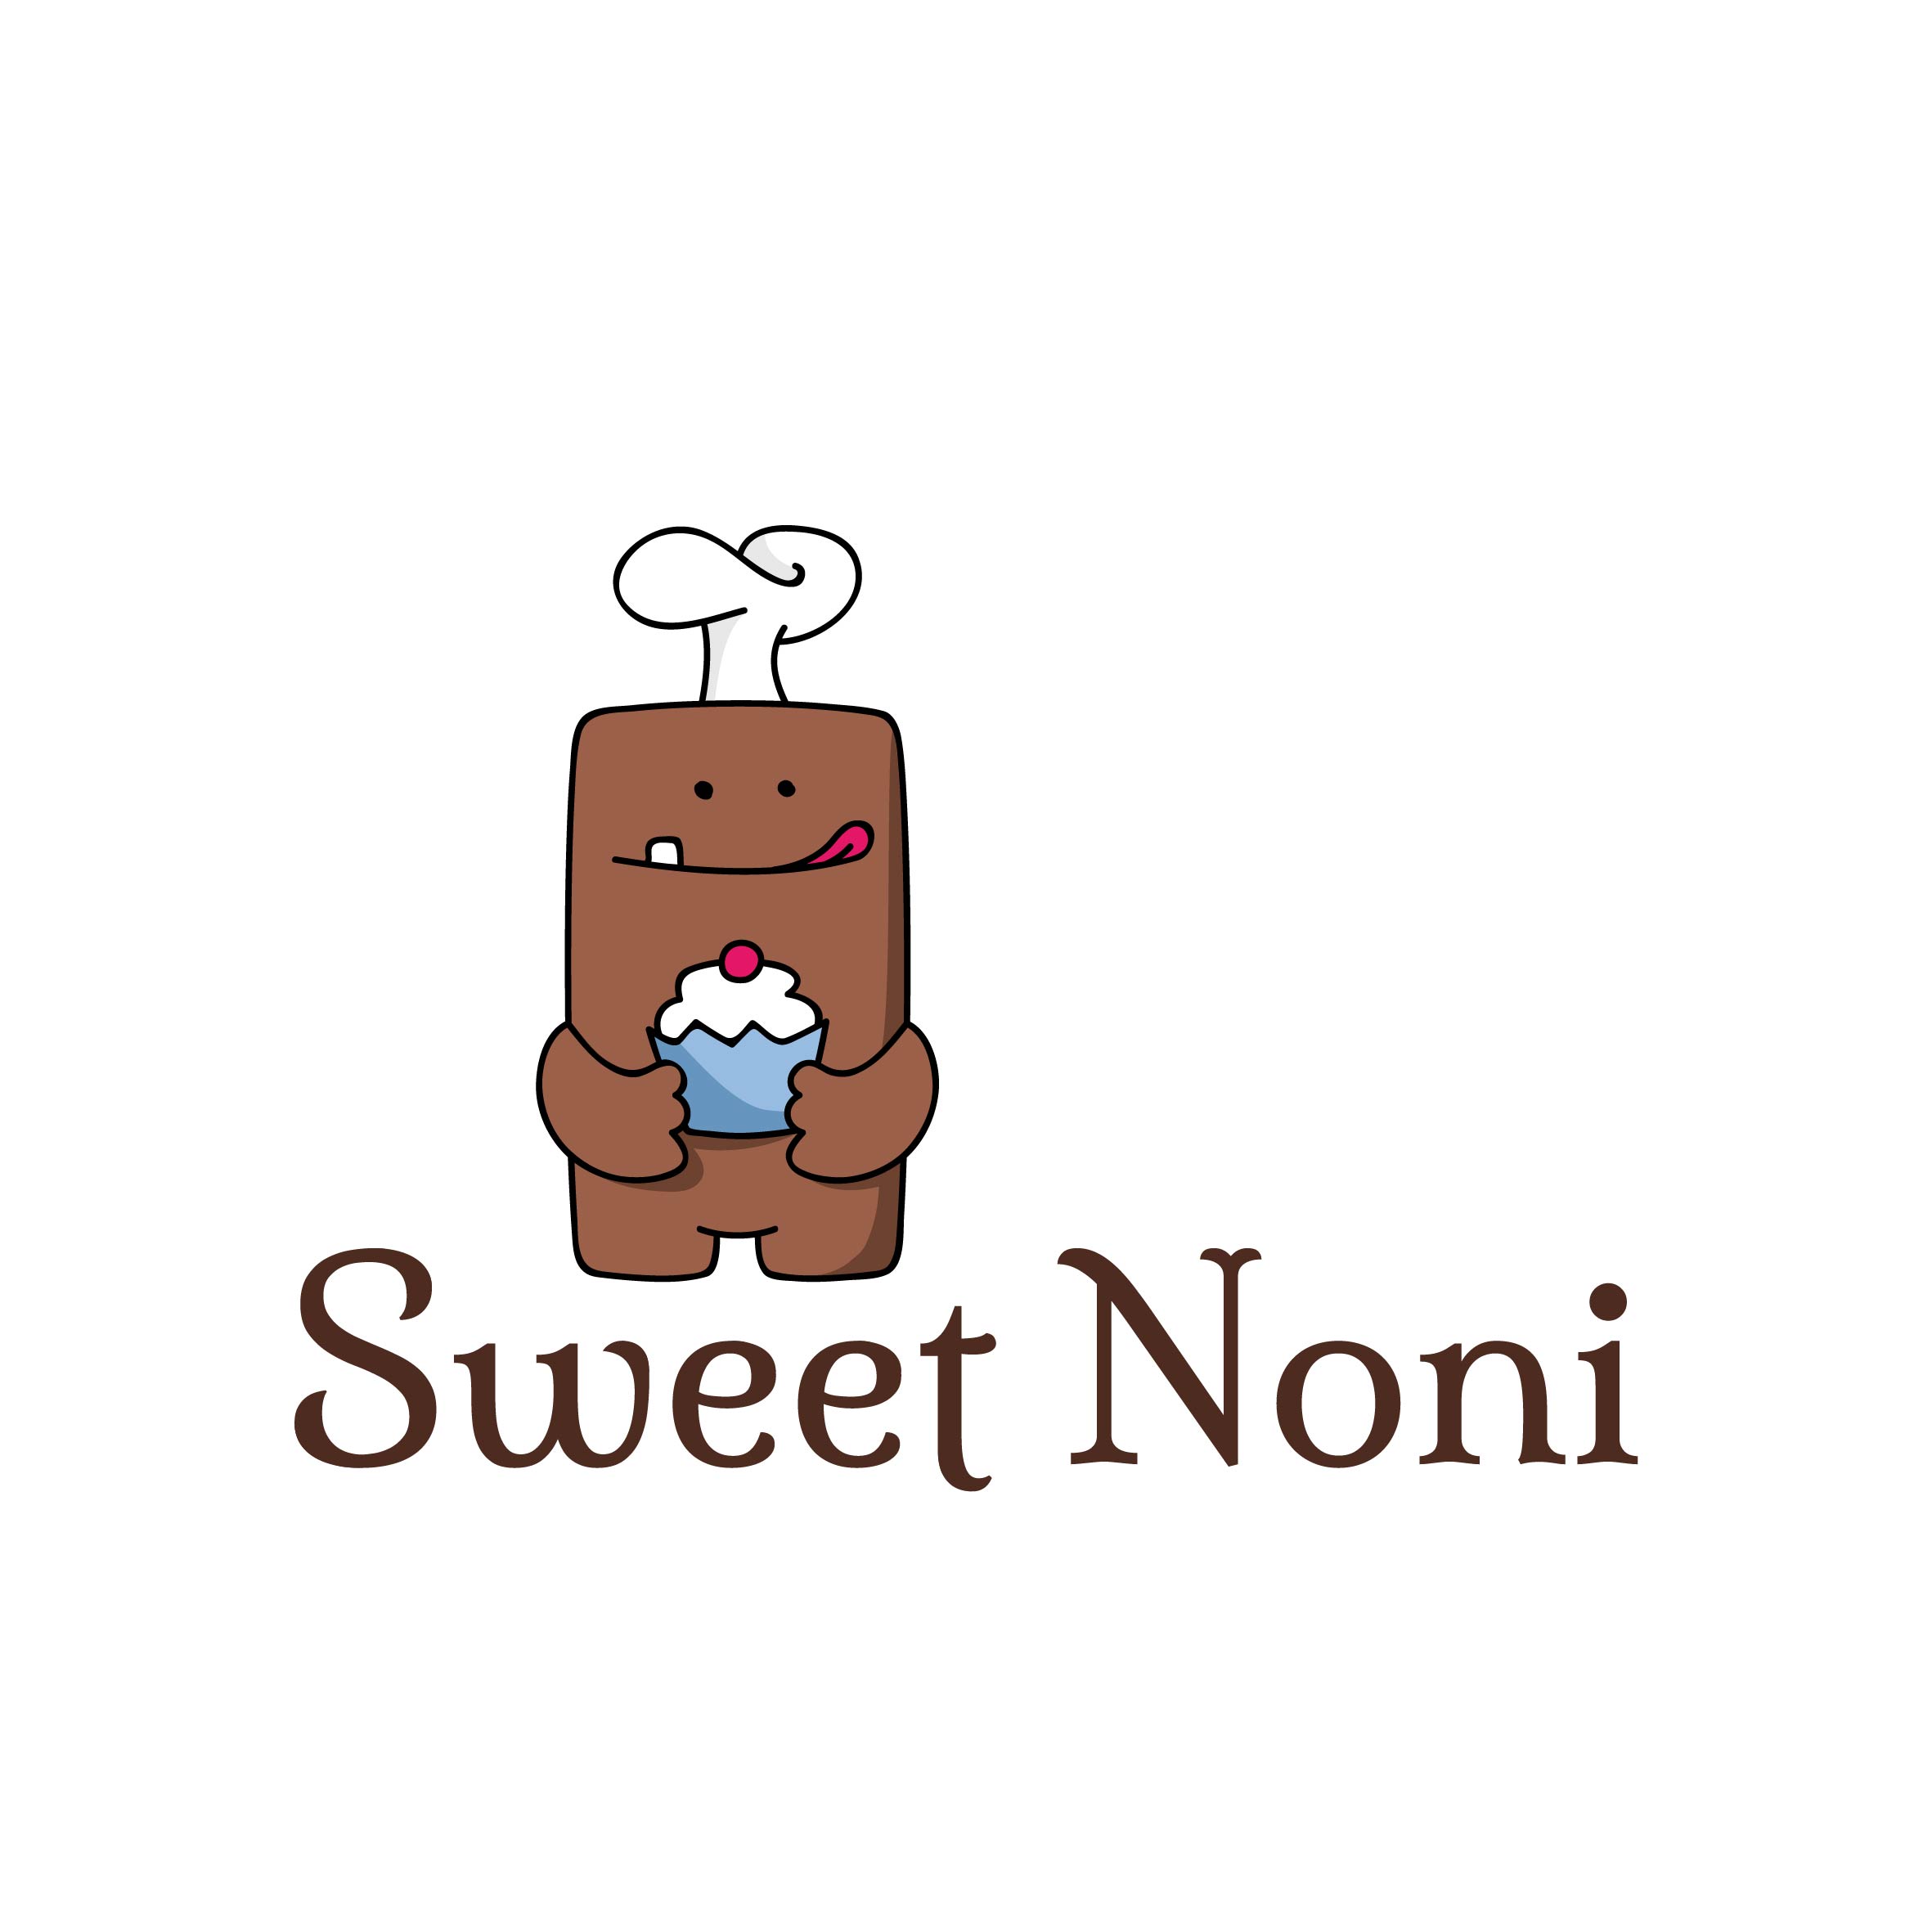 Sweet Noni